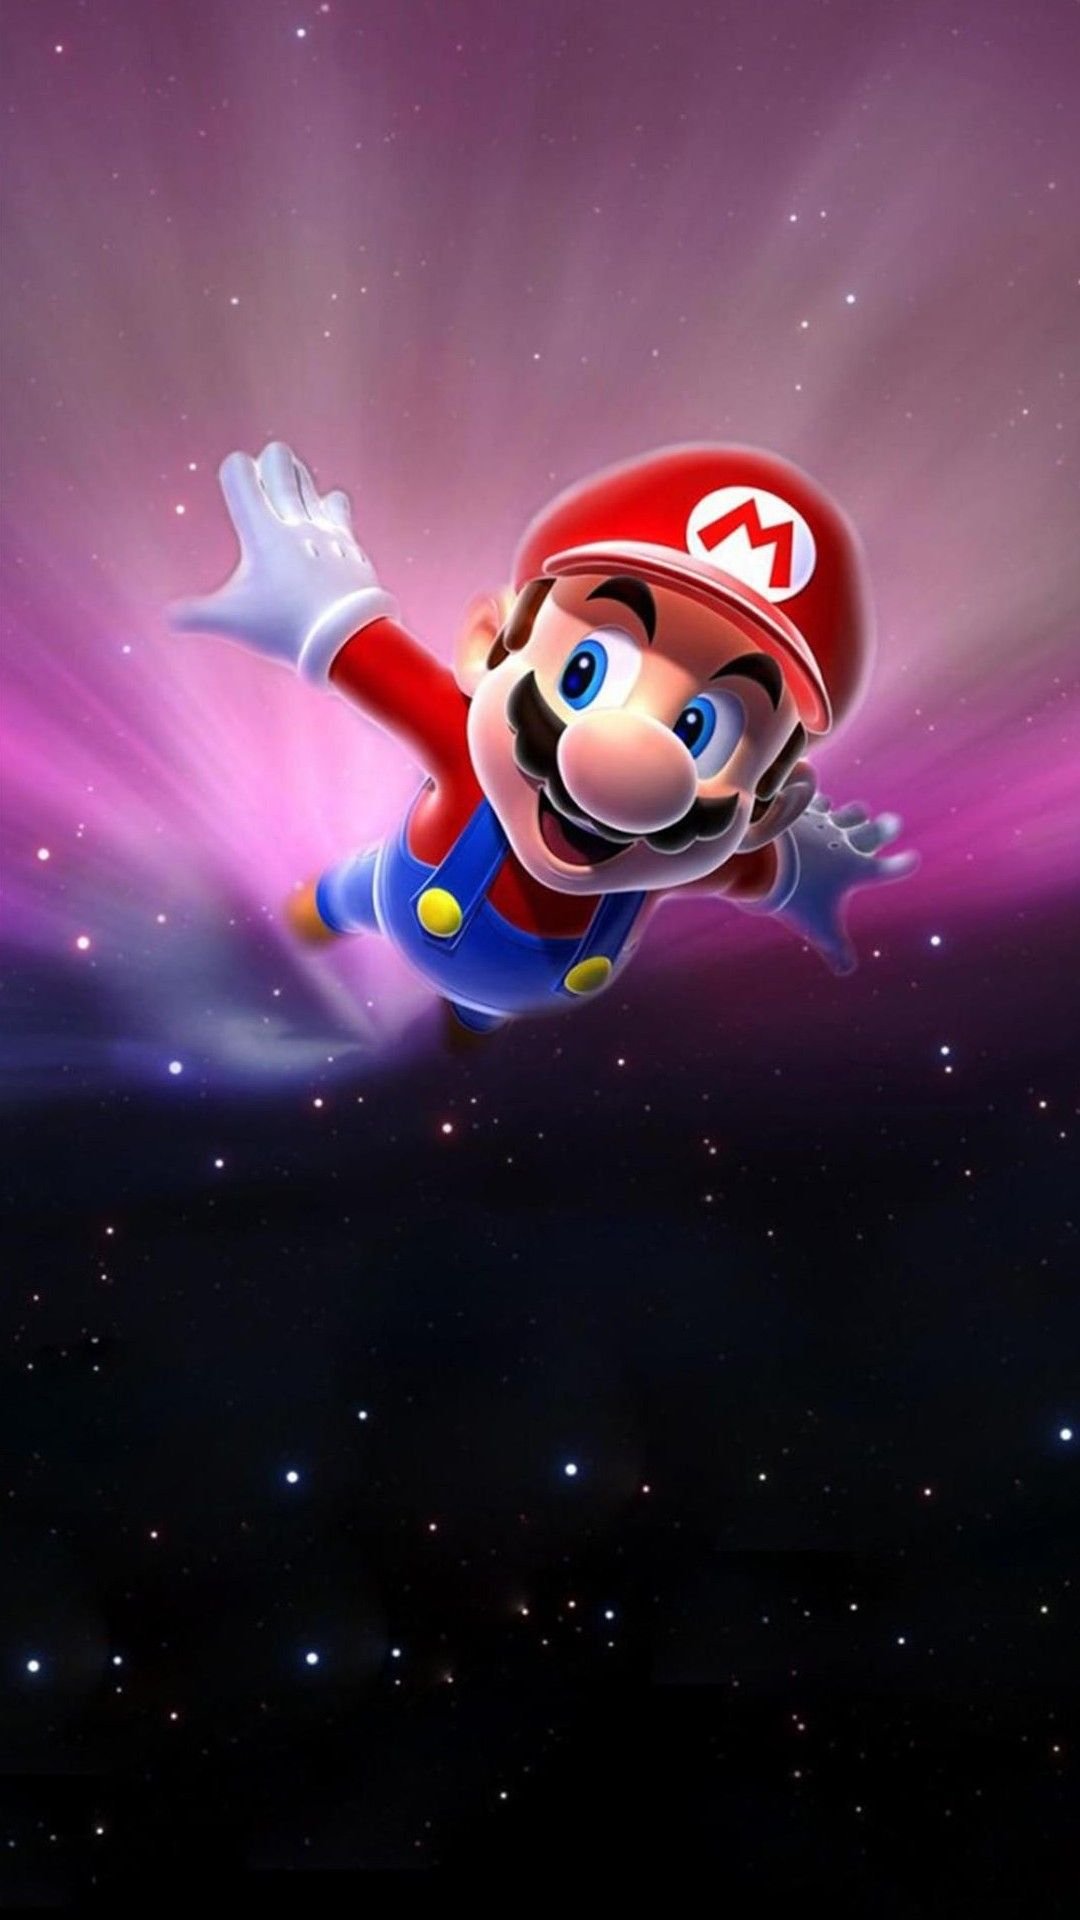 Super Mario Galaxy Redux  Wallpaper by SupaBloopa on DeviantArt